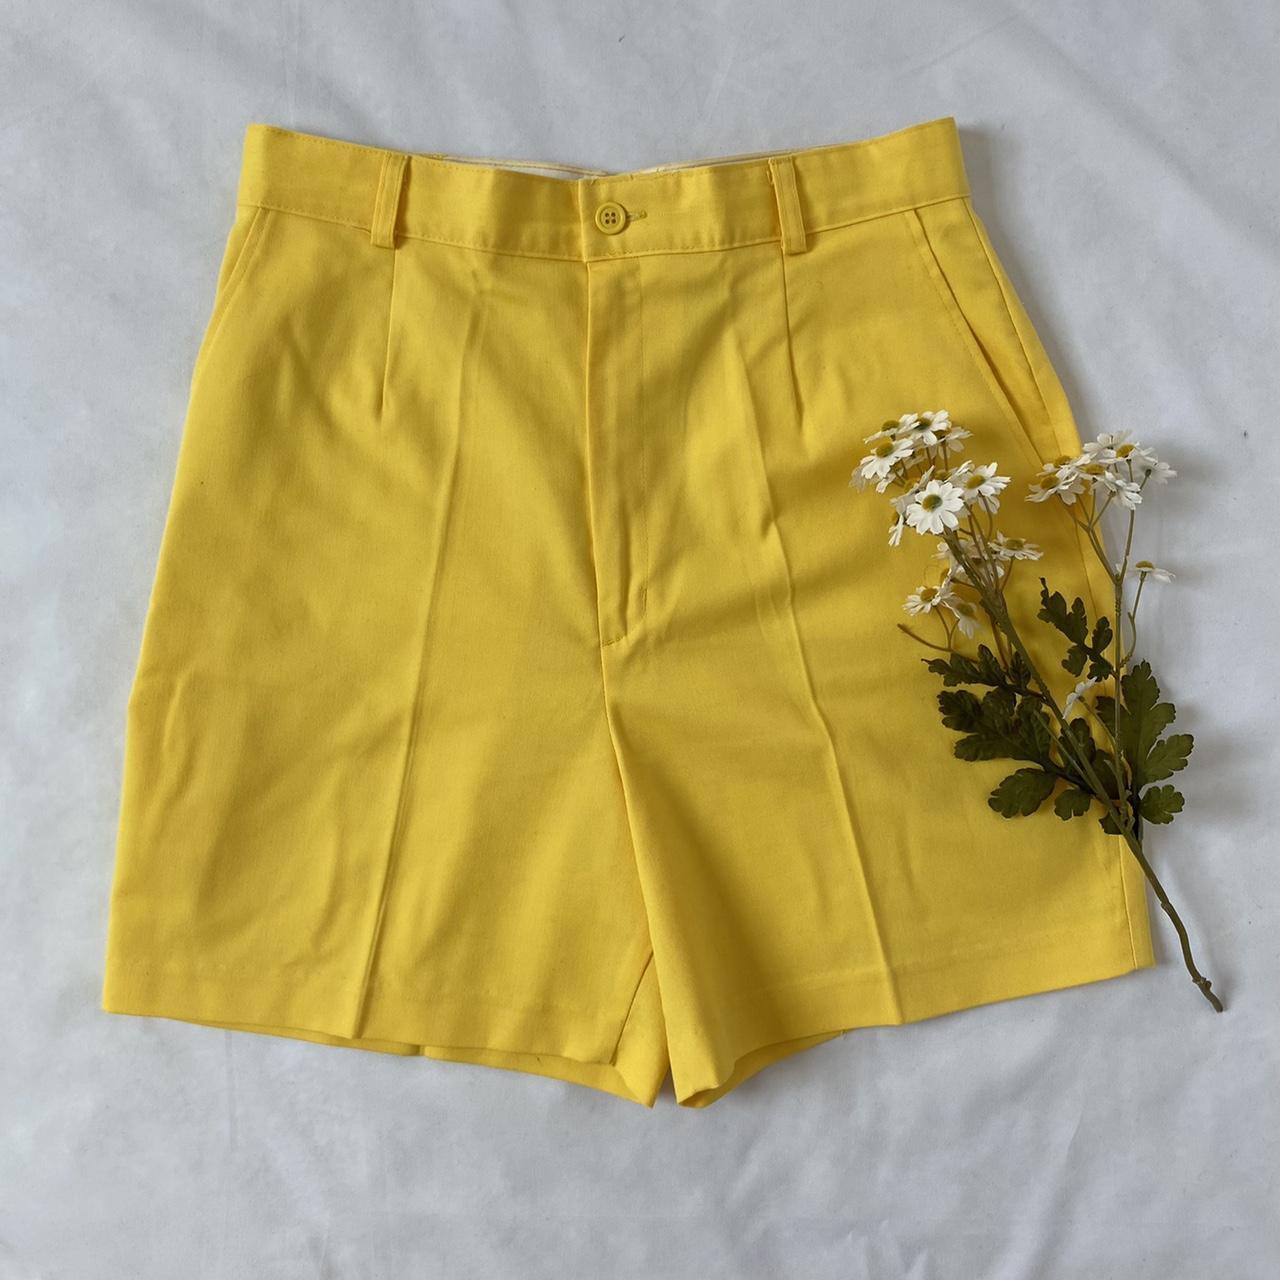 Sears Women's Yellow Shorts